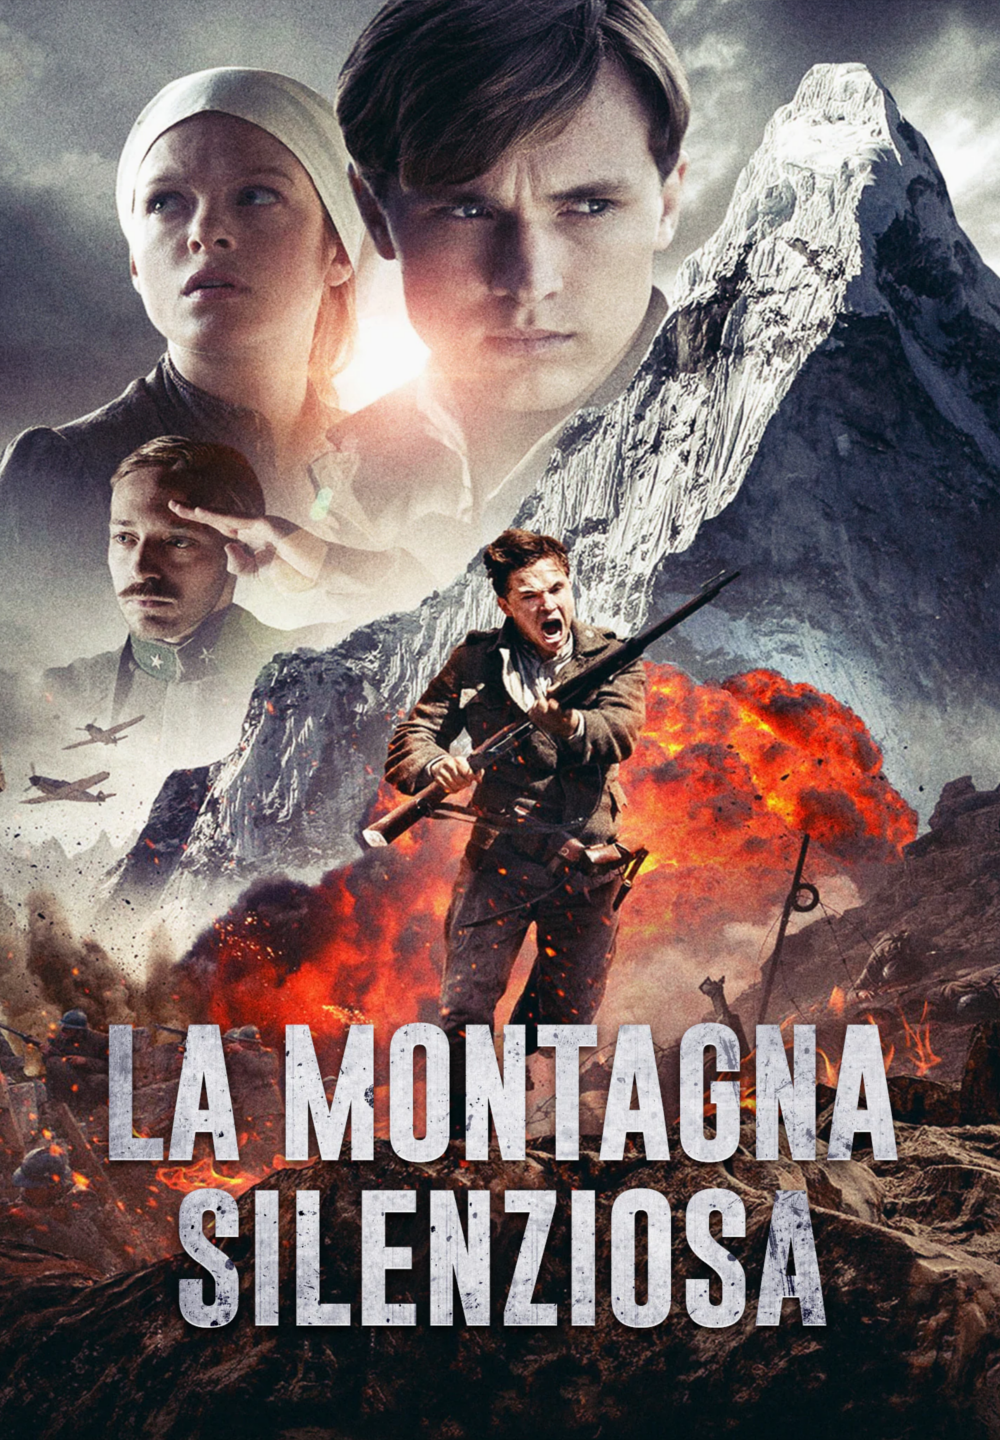 La montagna silenziosa (2014)